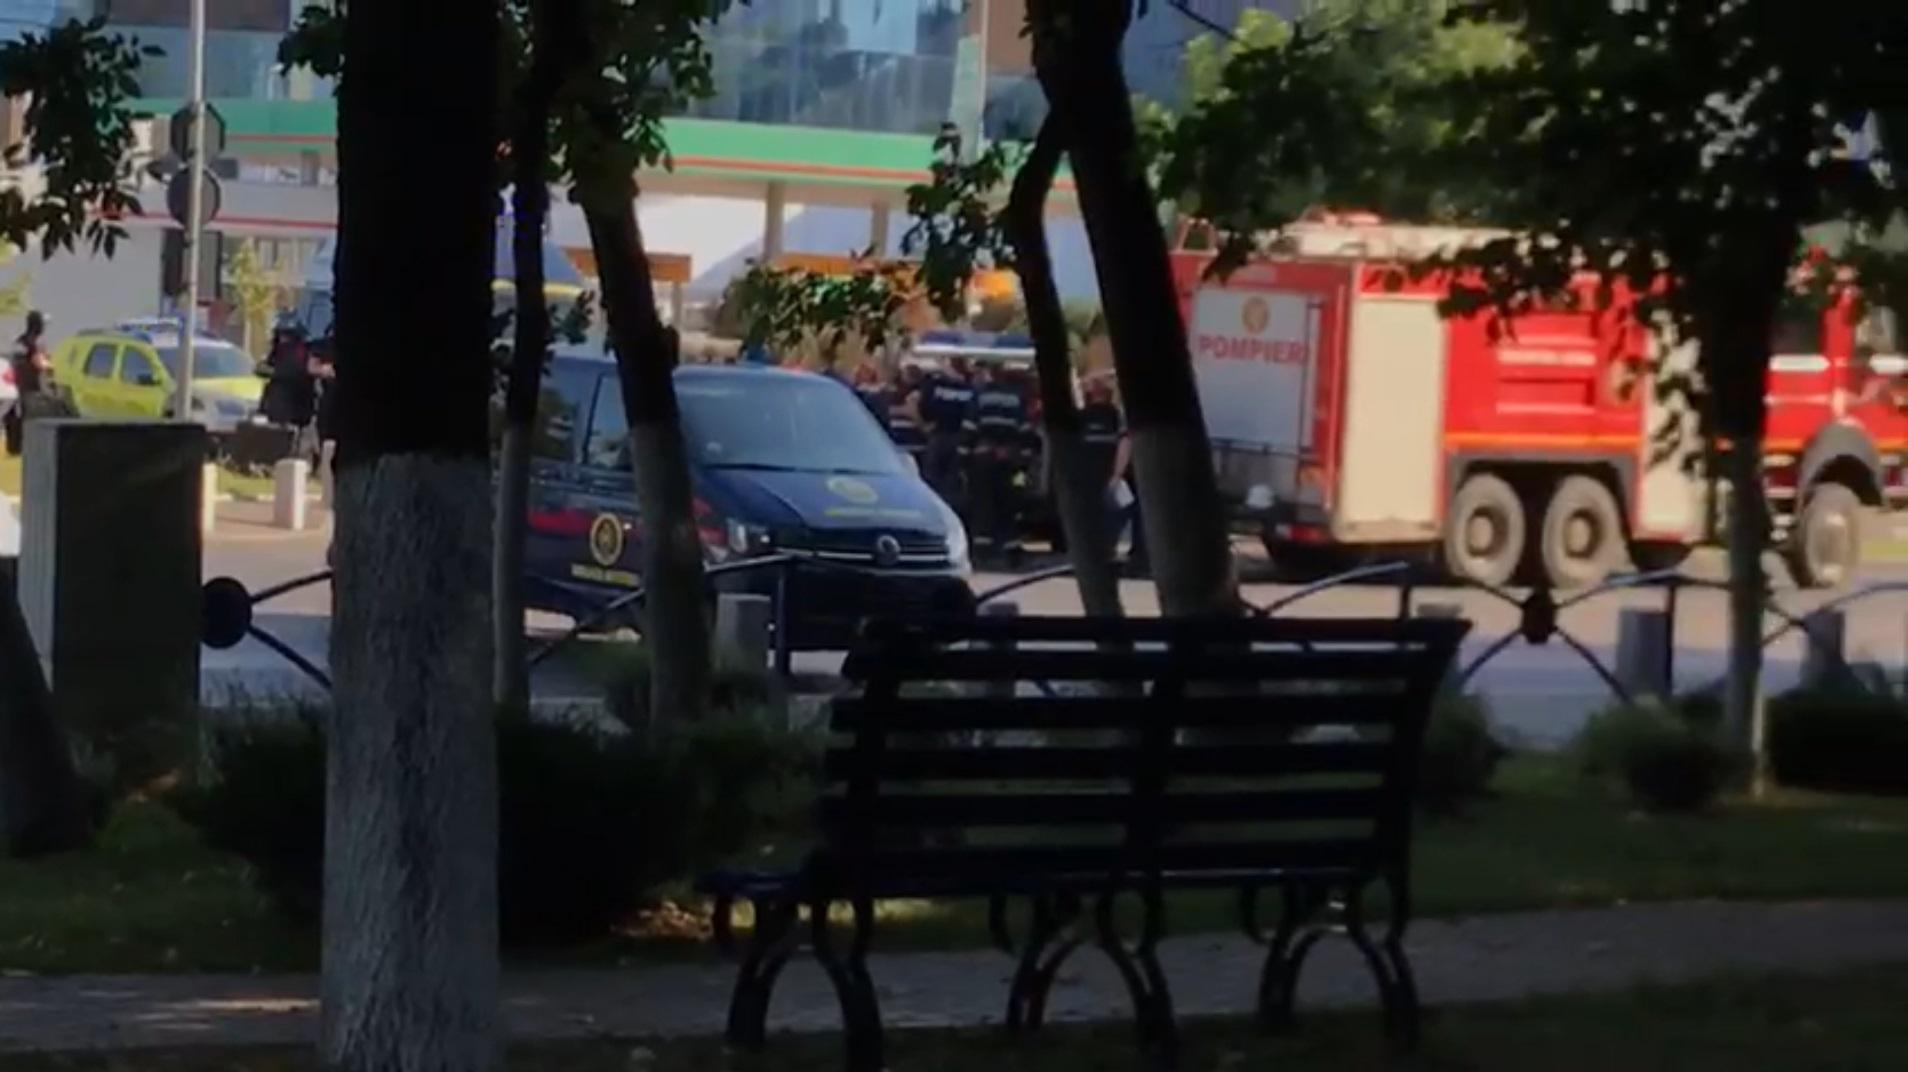 Alertă cu bombă în București, lângă un cunoscut mall din Berceni. A fost găsit un geamantan suspect